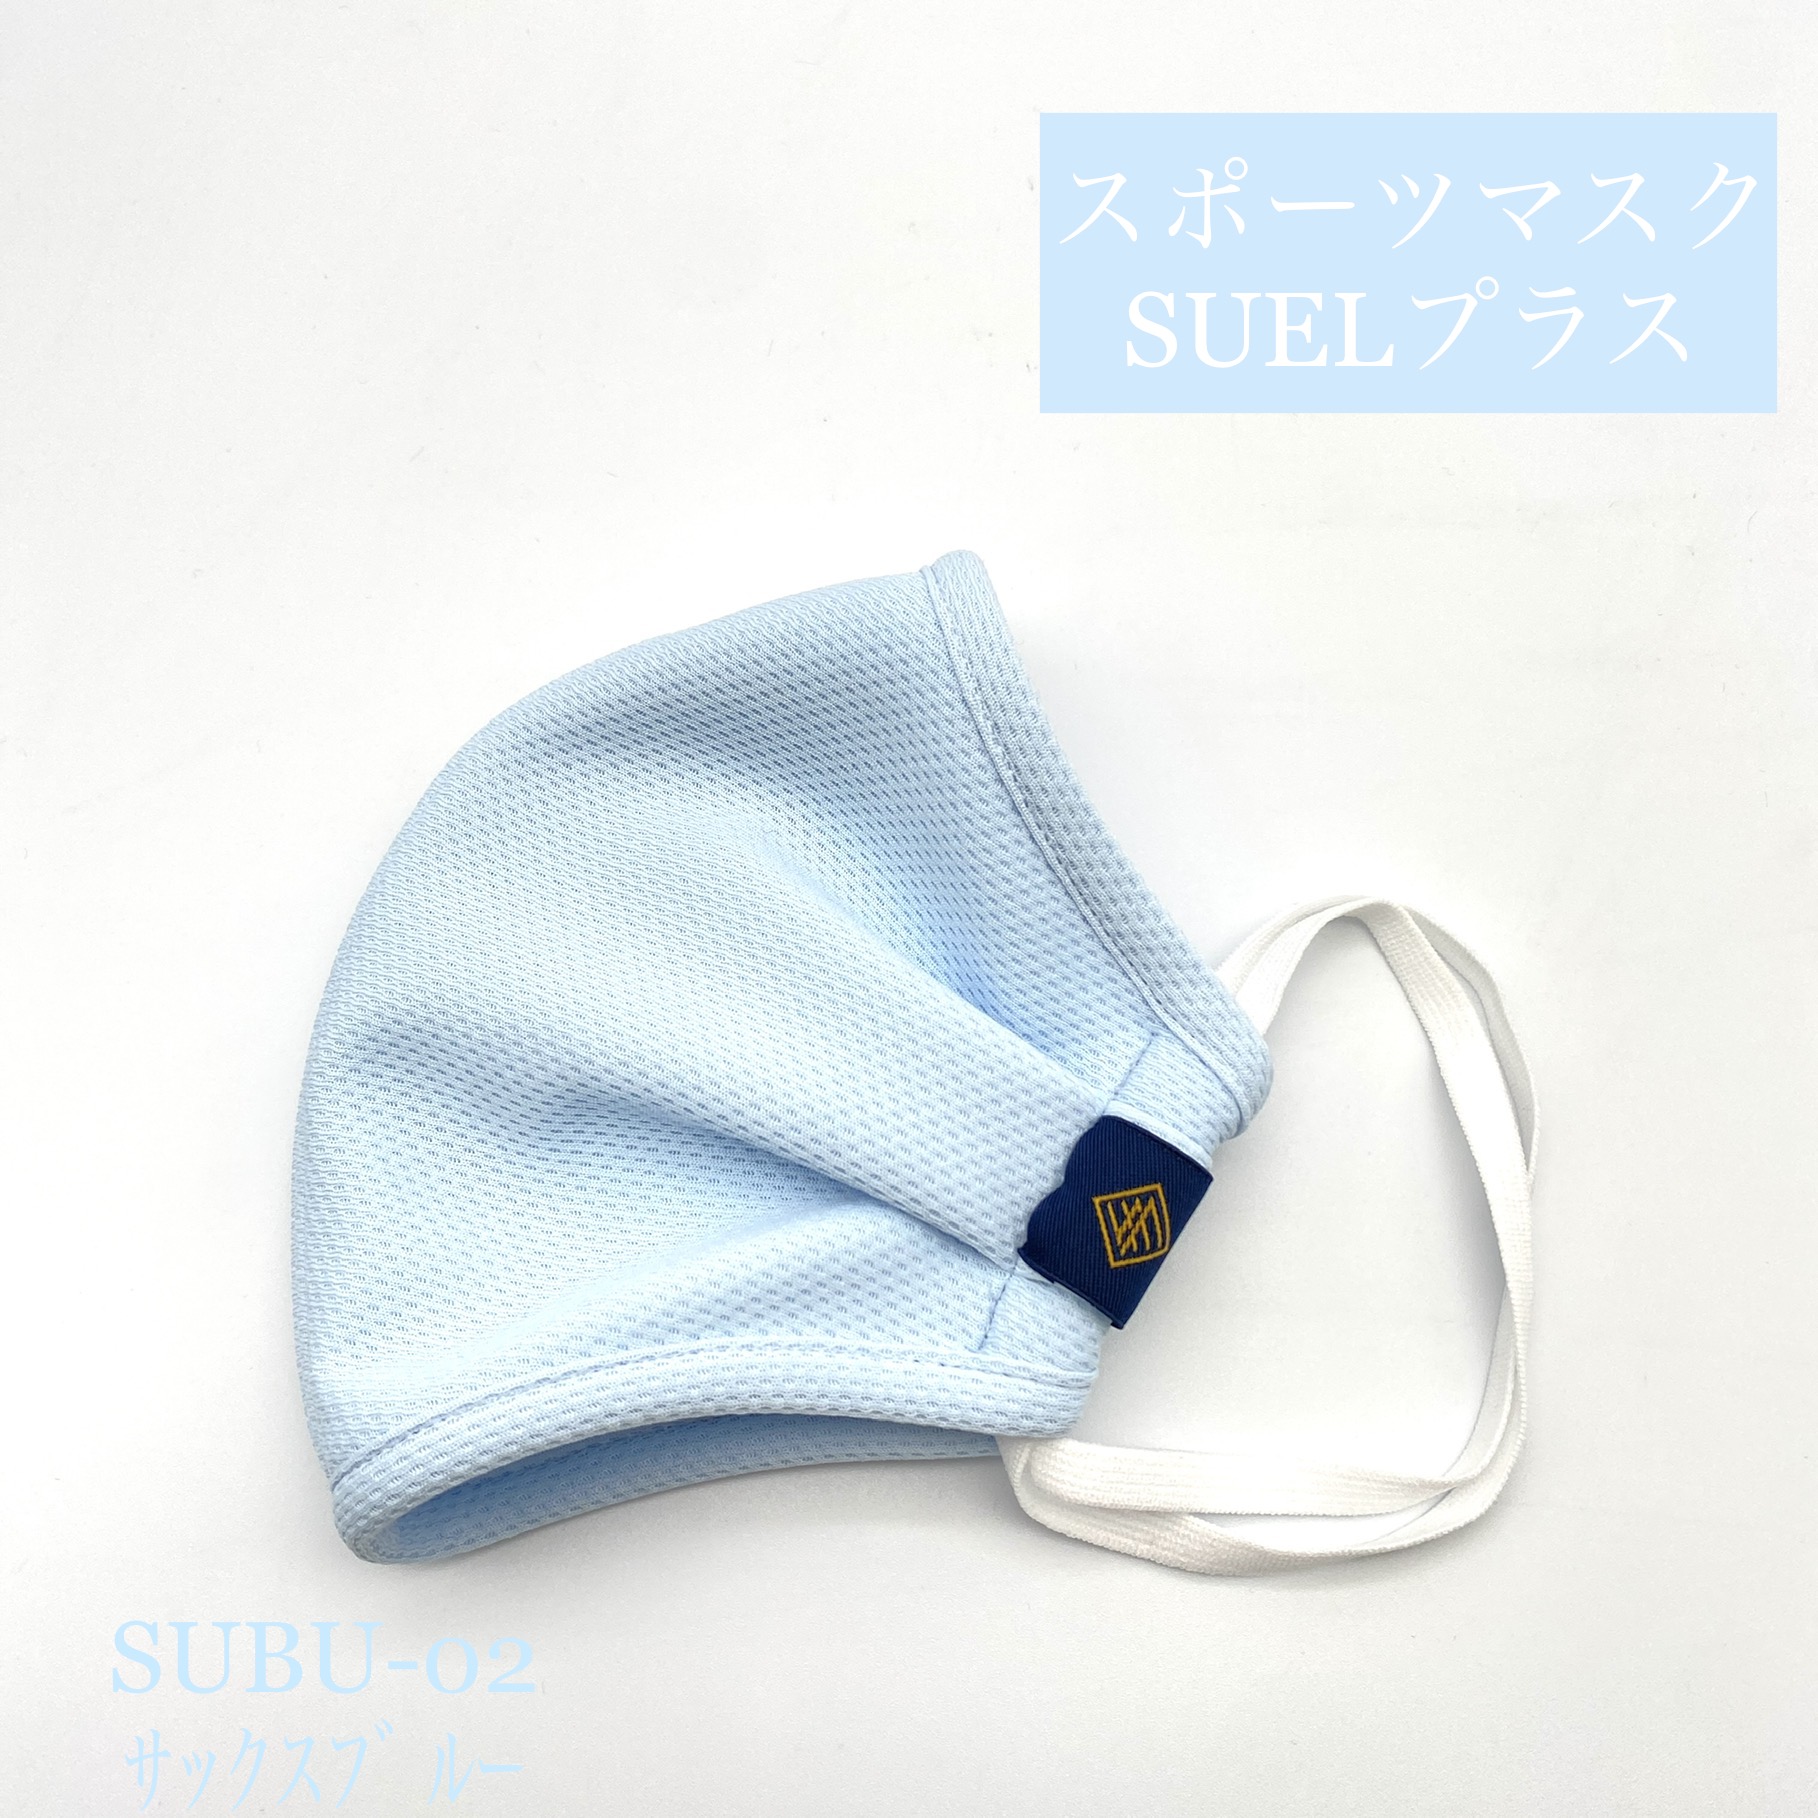 サックスブルー　SUBU-02　スポーツマスクSUELプラス〈柔らか伸縮〉